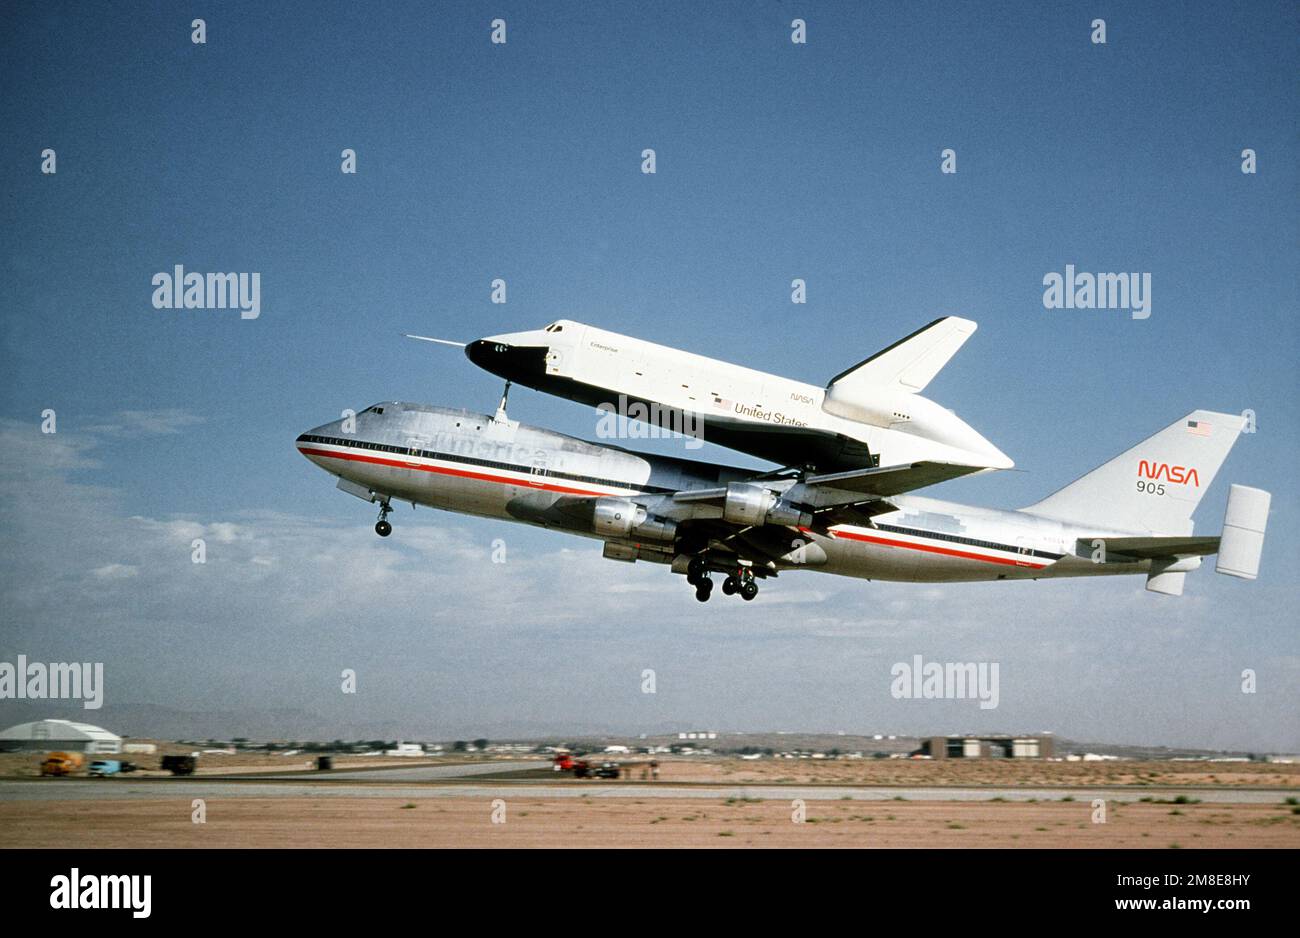 Das NASA 747 Shuttle Carrier Aircraft (SCA) hebt von der Landebahn in Edwards AFB, Kalifornien, mit dem Space Shuttle Endeavour OV-105 (Orbiter Vehicle-105) zurück. Exaktes Datum Aufnahme Unbekannt. Land: Unbekannt Stockfoto